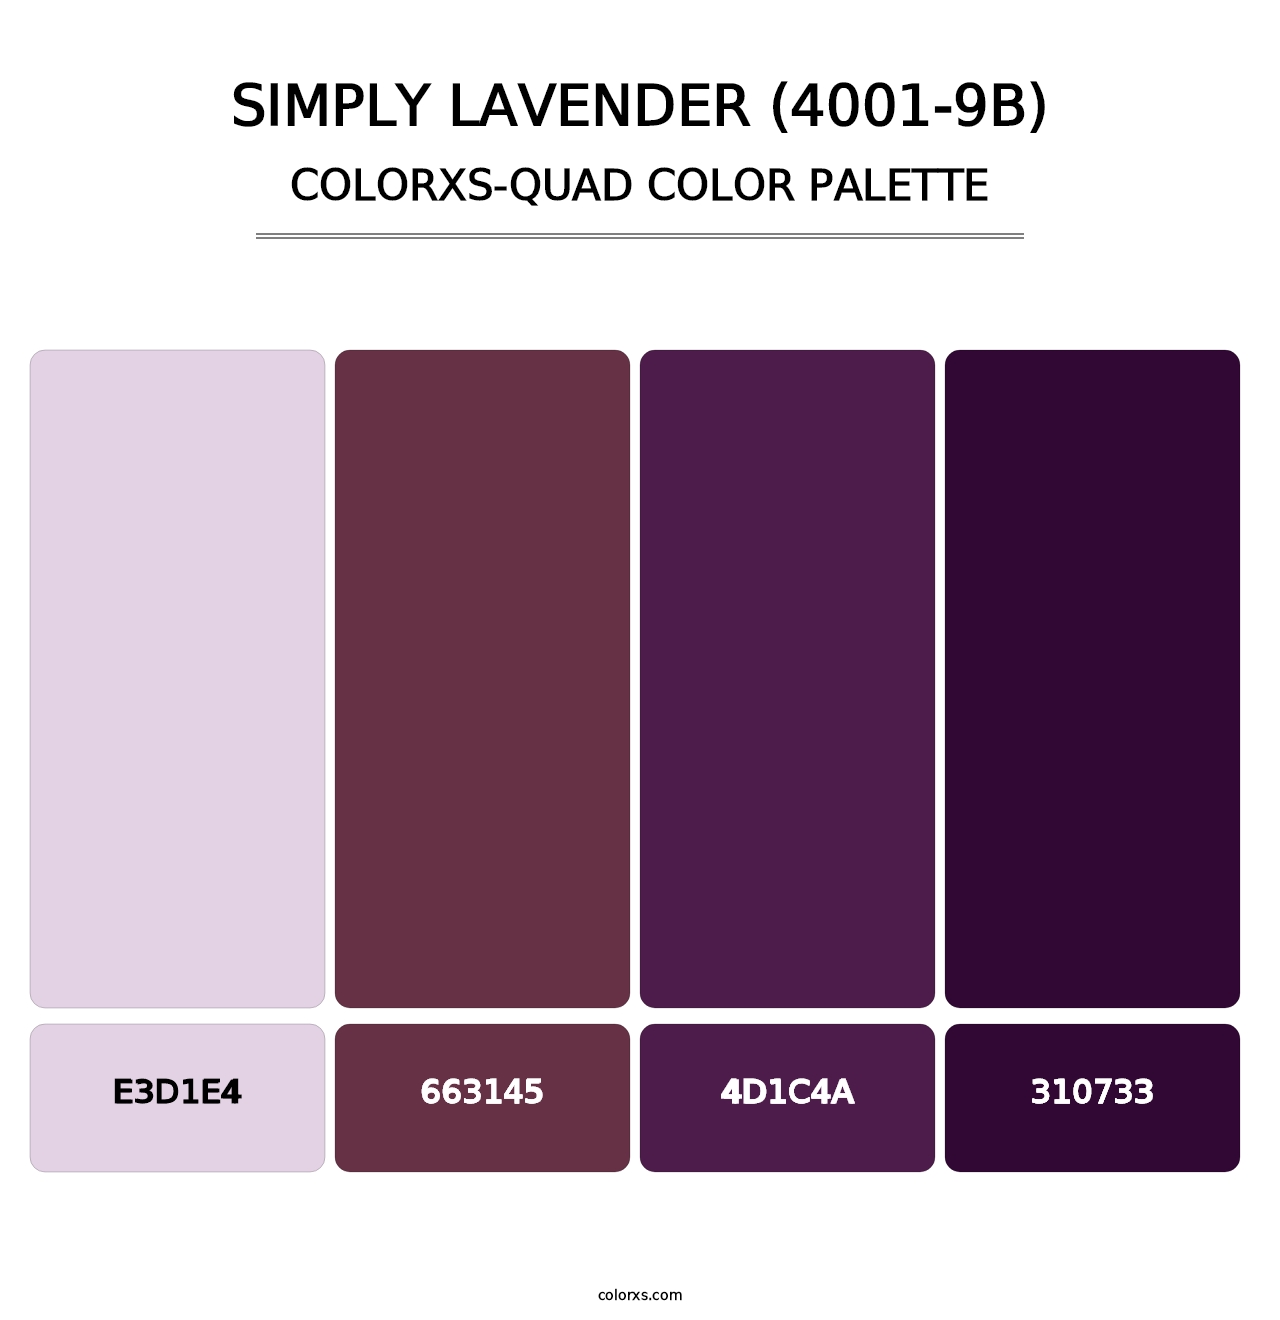 Simply Lavender (4001-9B) - Colorxs Quad Palette